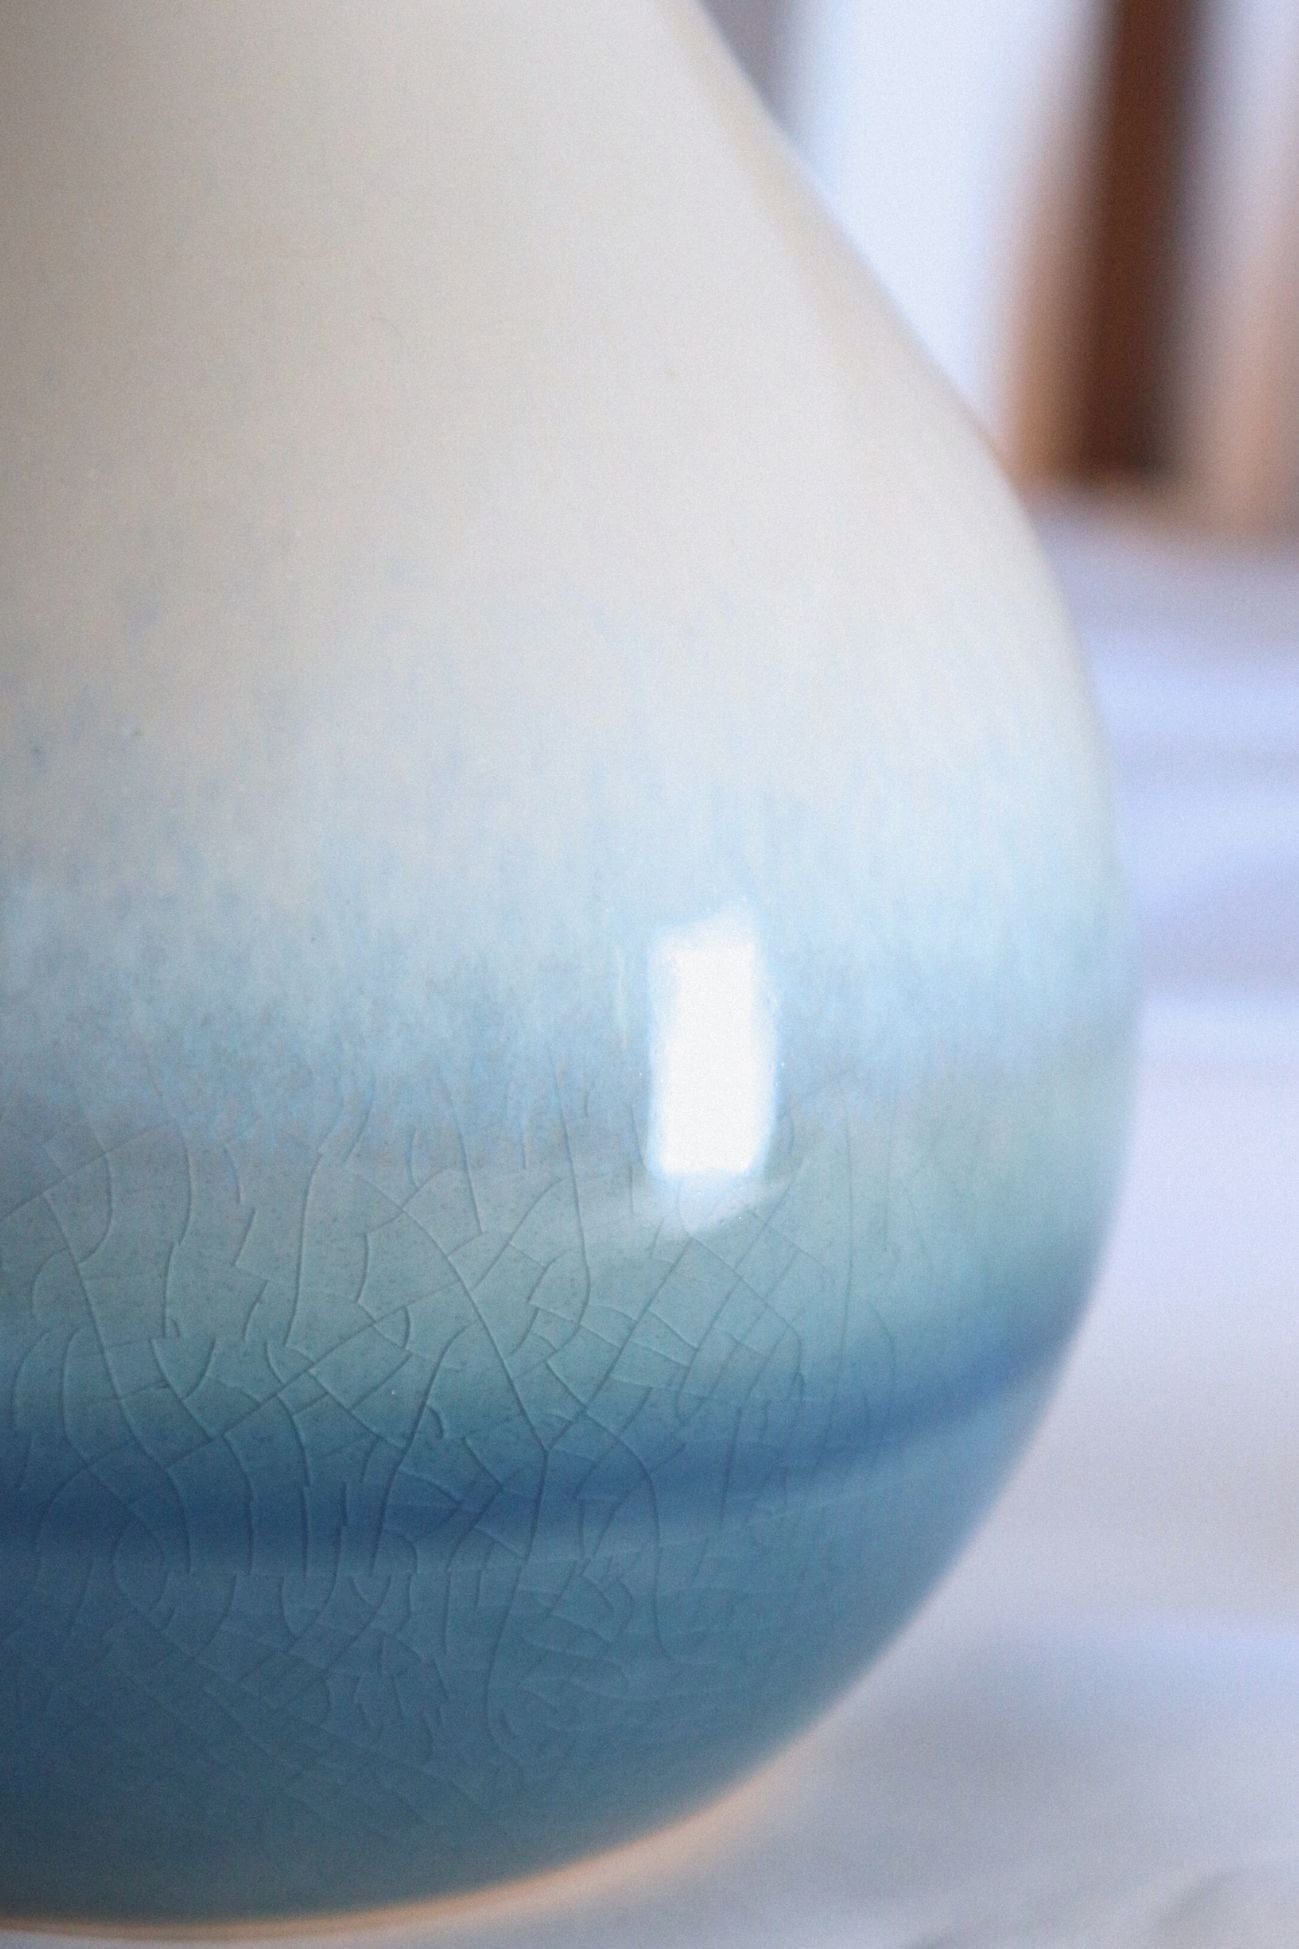 Item International Agua Agua - Vaso in porcellana sfumato con collo stretto | Item International